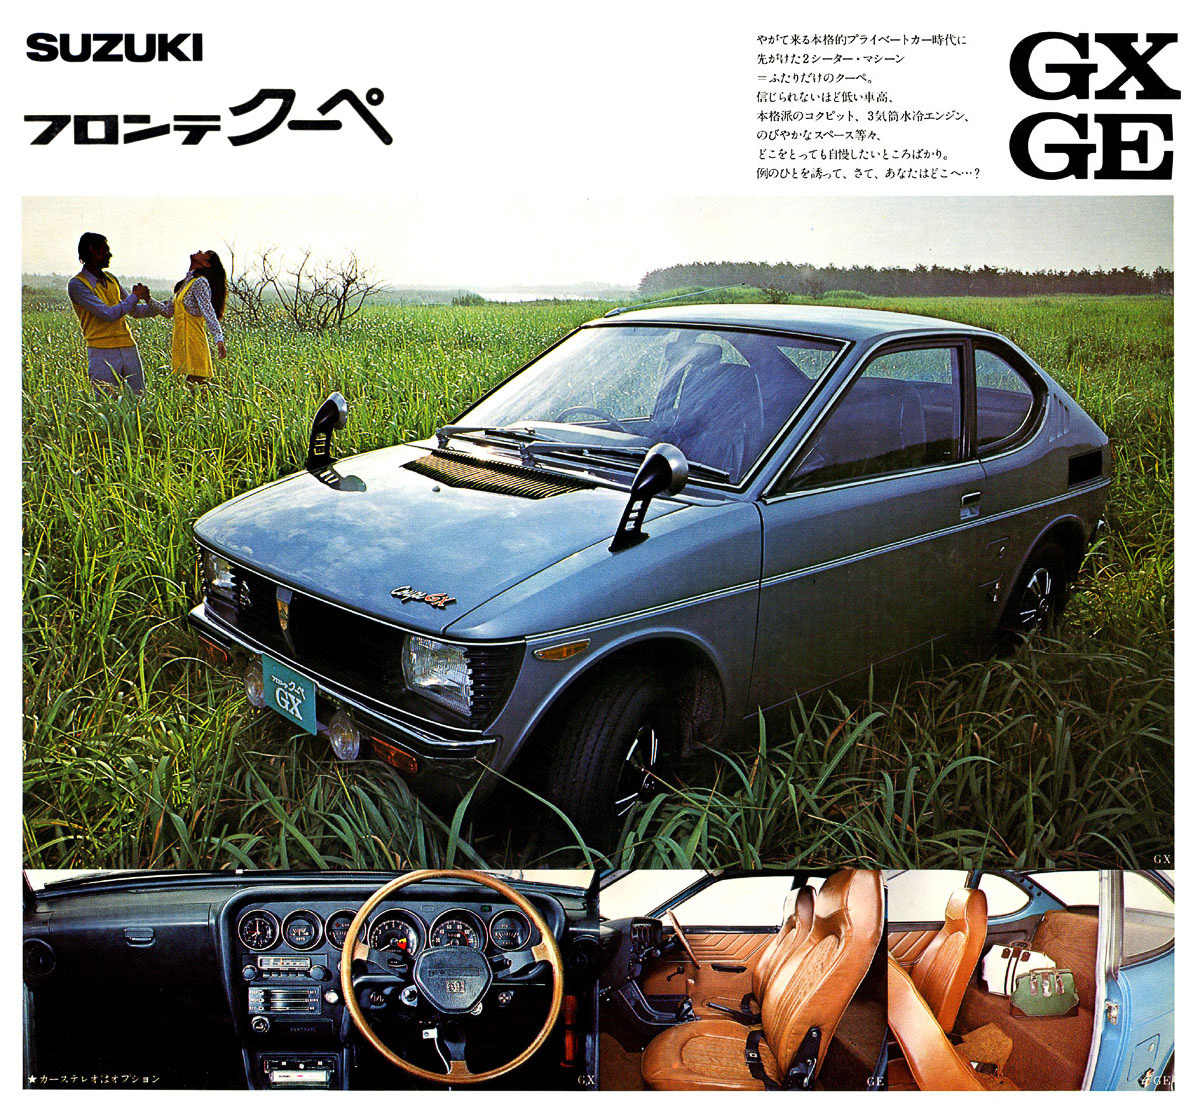 Ez talán a legkultikusabb Suzuki kei-autó Japánban. Formáját Giorgio Giugiaro tervezte (közismerten egy korábbi olasz tanulmány, a Rowan Elettrica nyomán), igaz, a japánok a végleges kivitelhez változtattak az arányokon és a díszítéseken. A Fronte Coupé legerősebb kivitele 37 lóerőt tudott a már vízhűtéses, de még kétütemű, 360 köbcentis farmotorból - igazi rakétává téve a többi kei-kocsinál áramvonalasabb, bő féltonnás autókát.